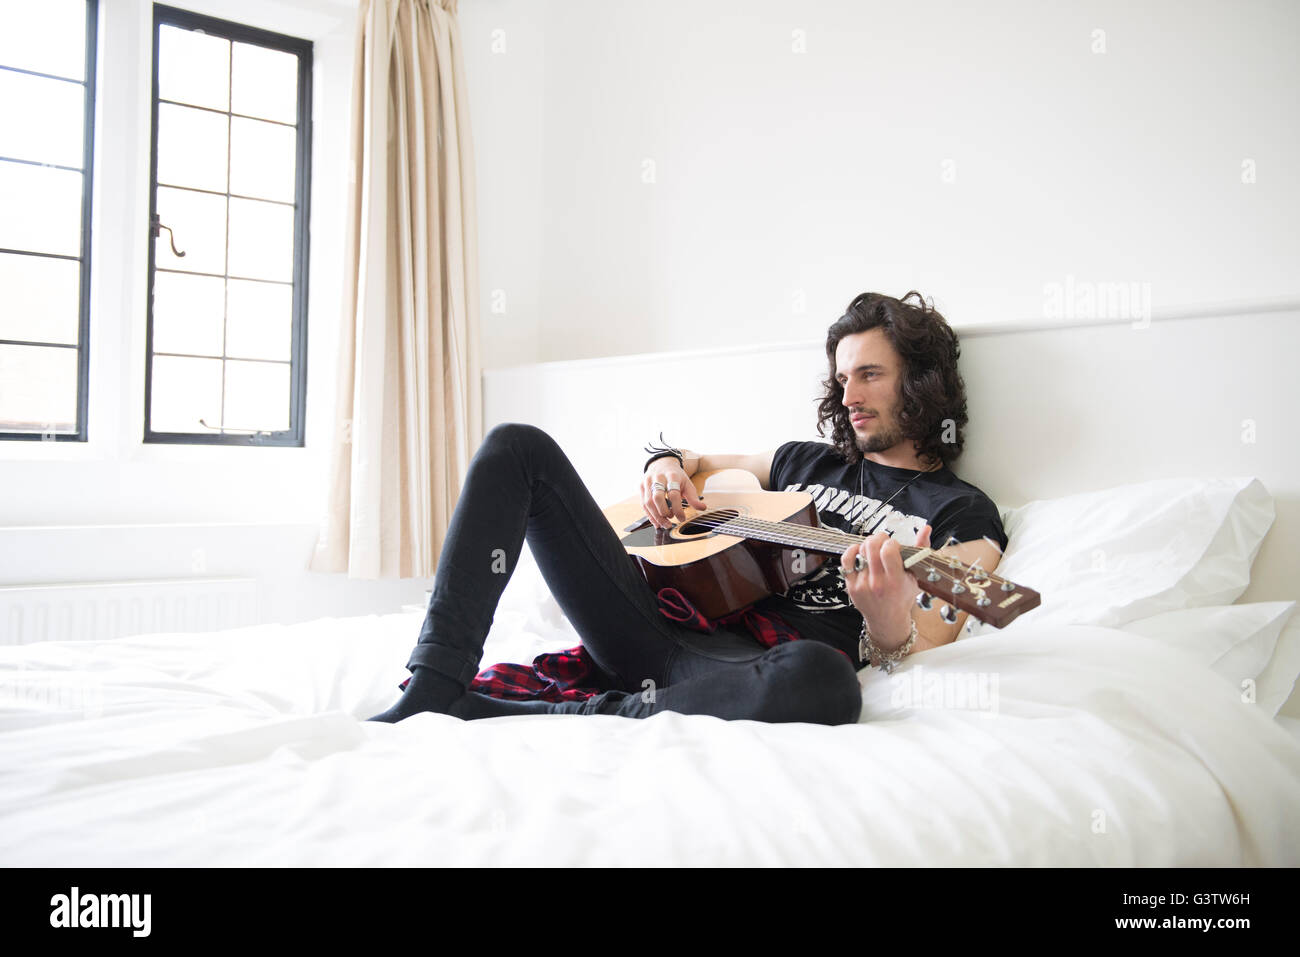 Un jeune homme allongé sur un lit avec une guitare. Banque D'Images